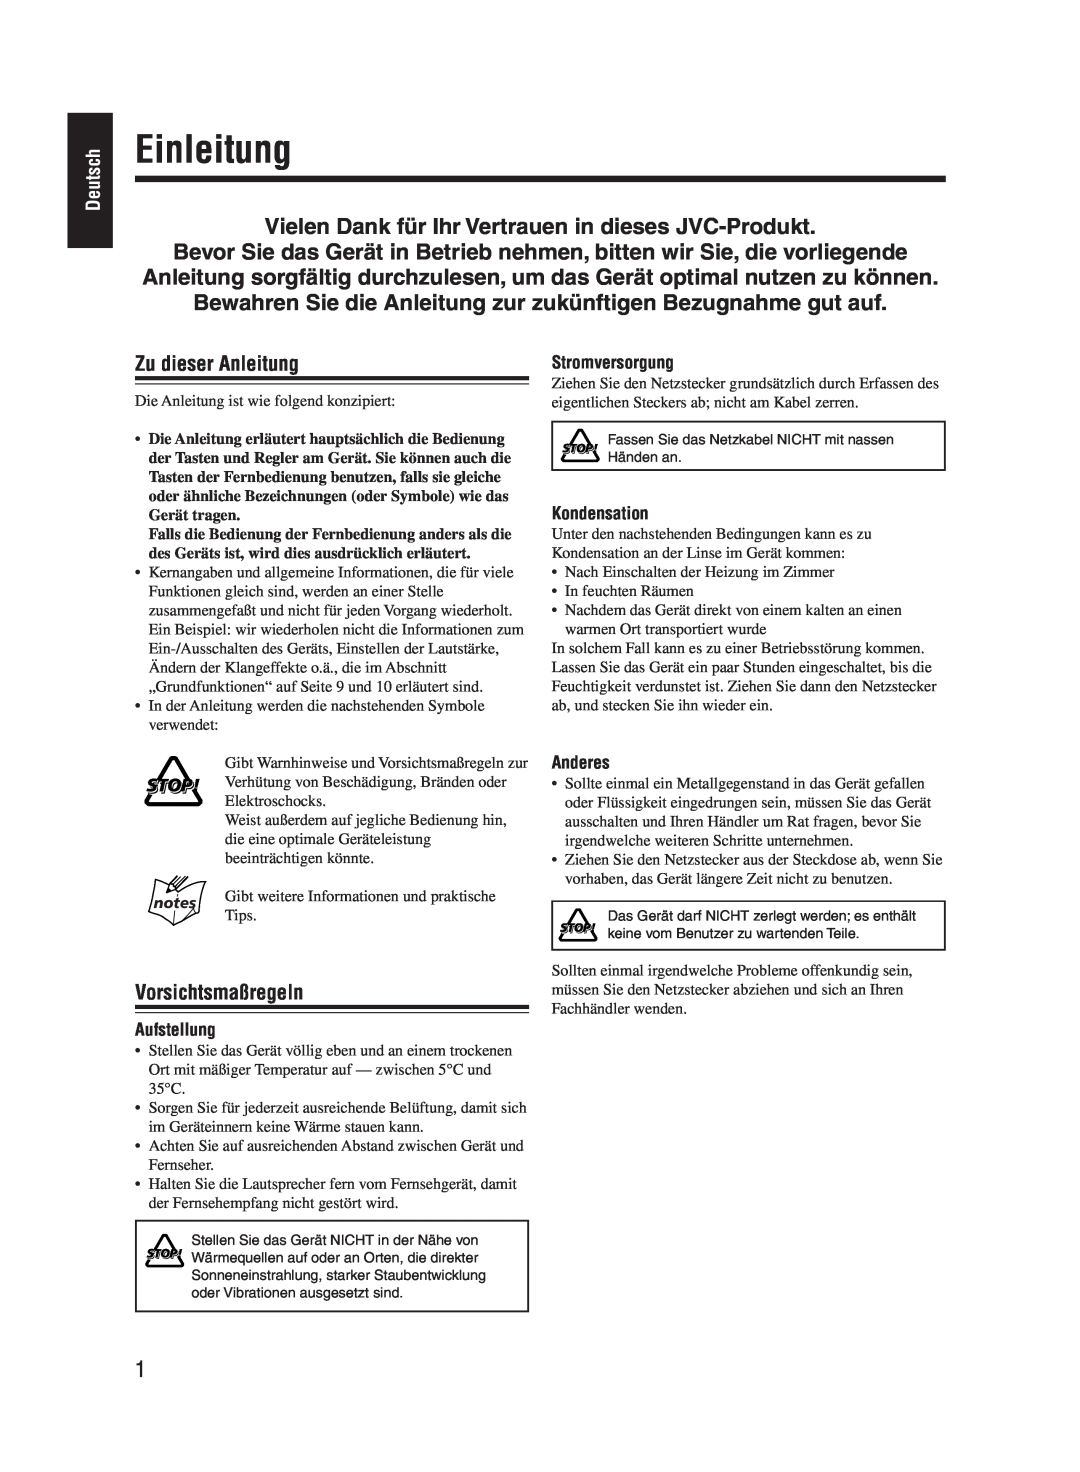 JVC UX-M55 manual Einleitung, Zu dieser Anleitung, Vorsichtsmaßregeln 